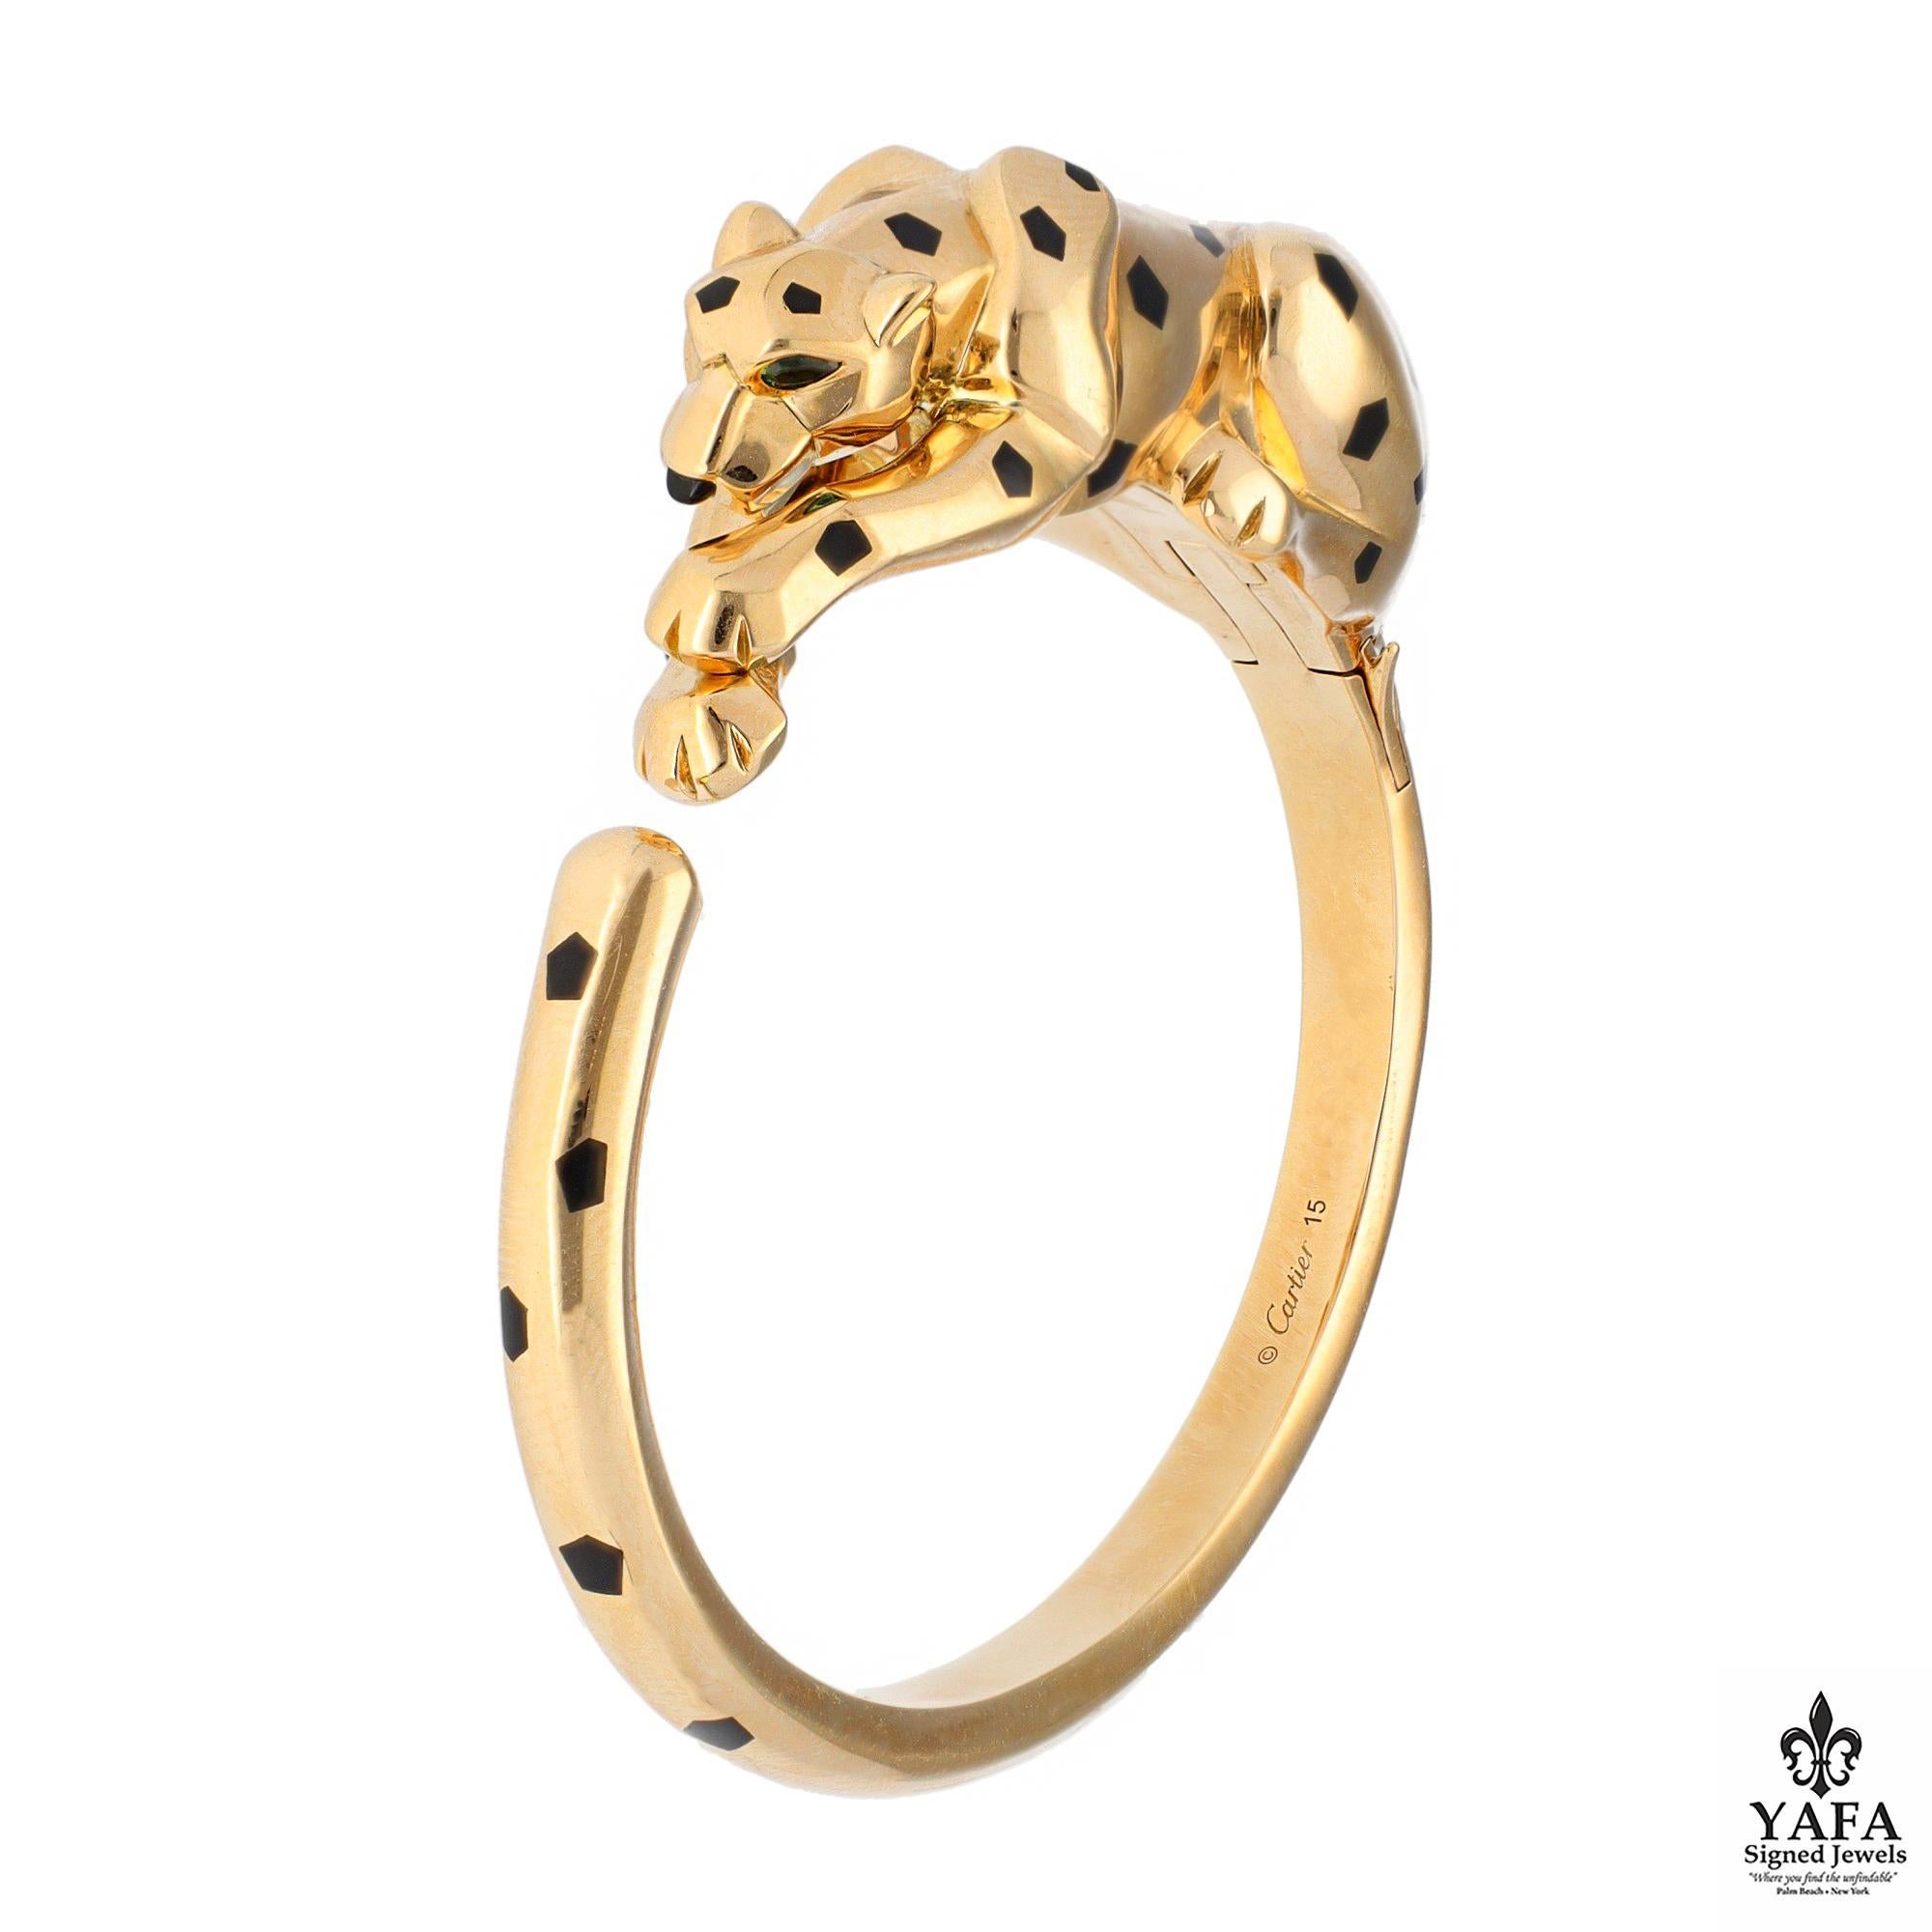 Cartier Panther Armband, 18K Gelbgold Feder einen kauernden Panther mit Tsavorit Granat Augen, Onyx Nase und schwarzem Lack Punkt Details. 
Signiert - Cartier
Größe - 15